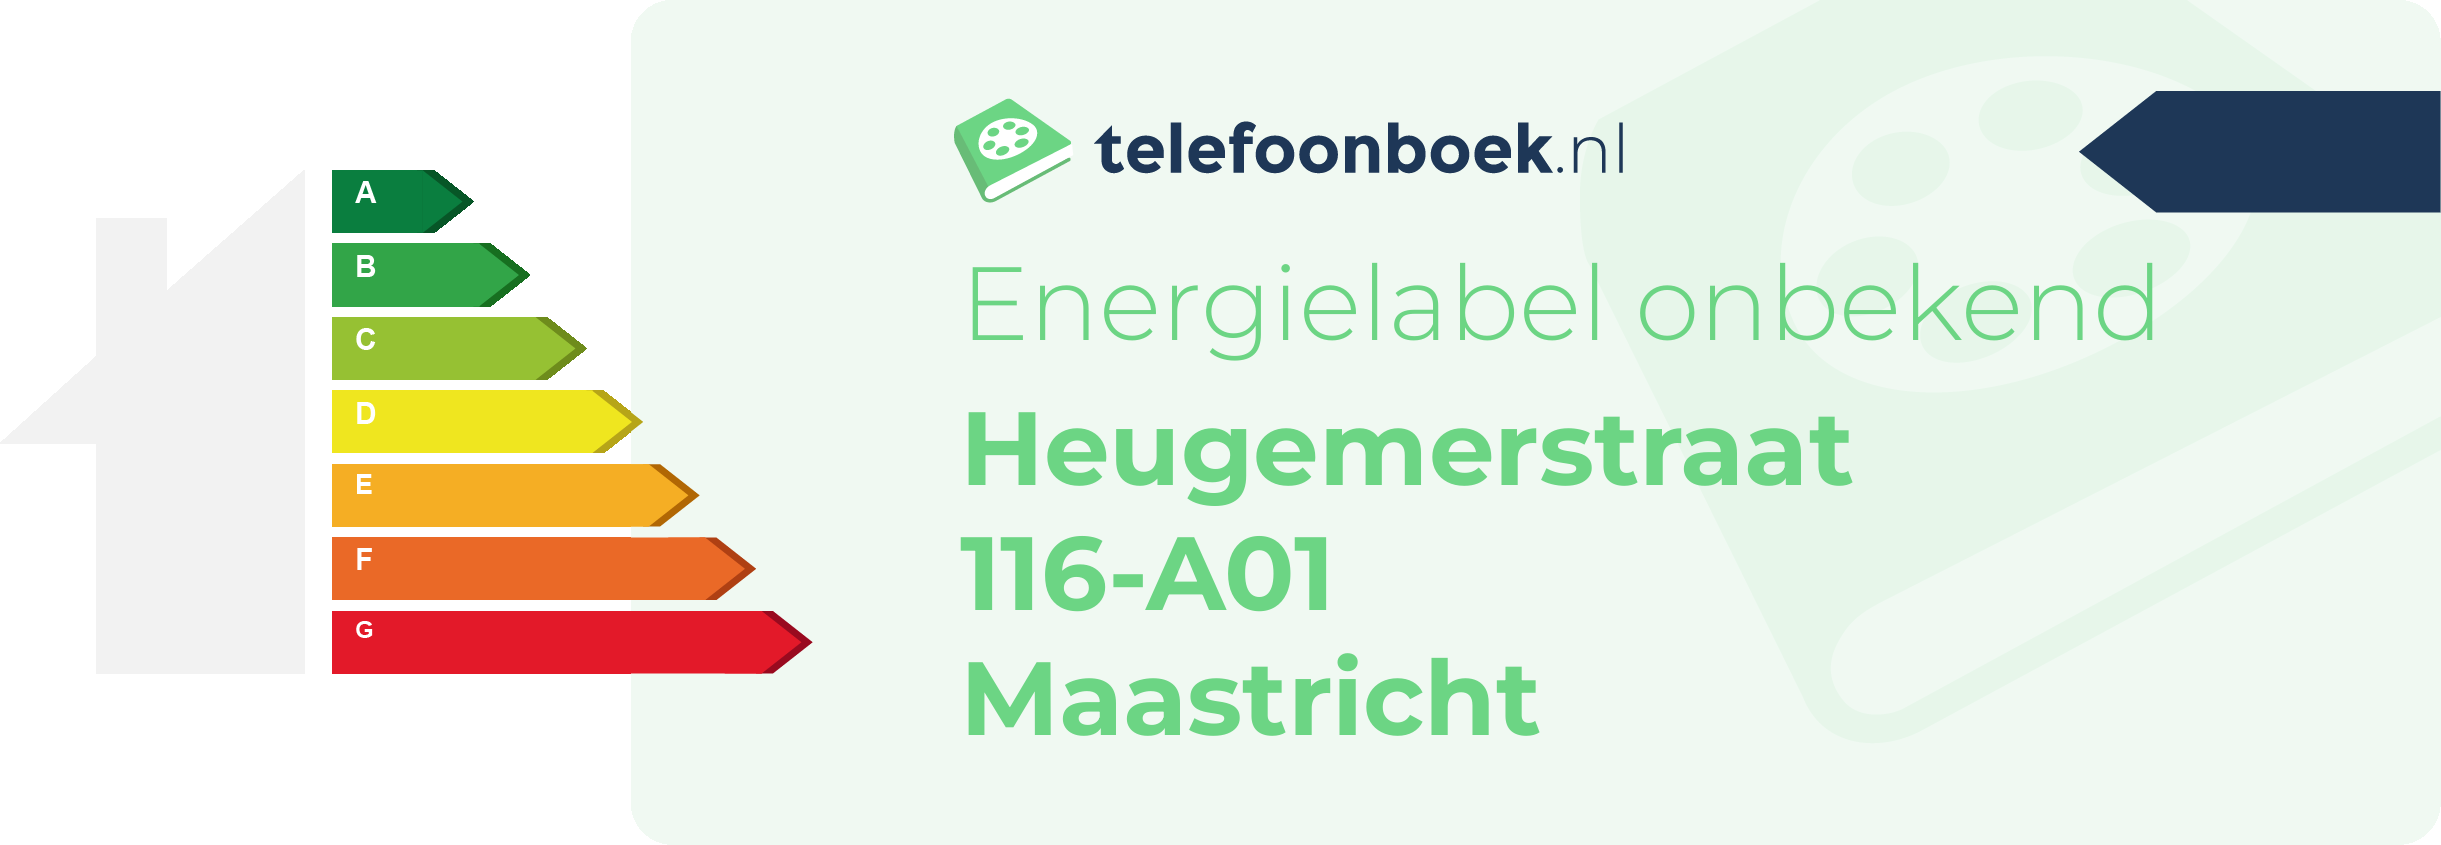 Energielabel Heugemerstraat 116-A01 Maastricht